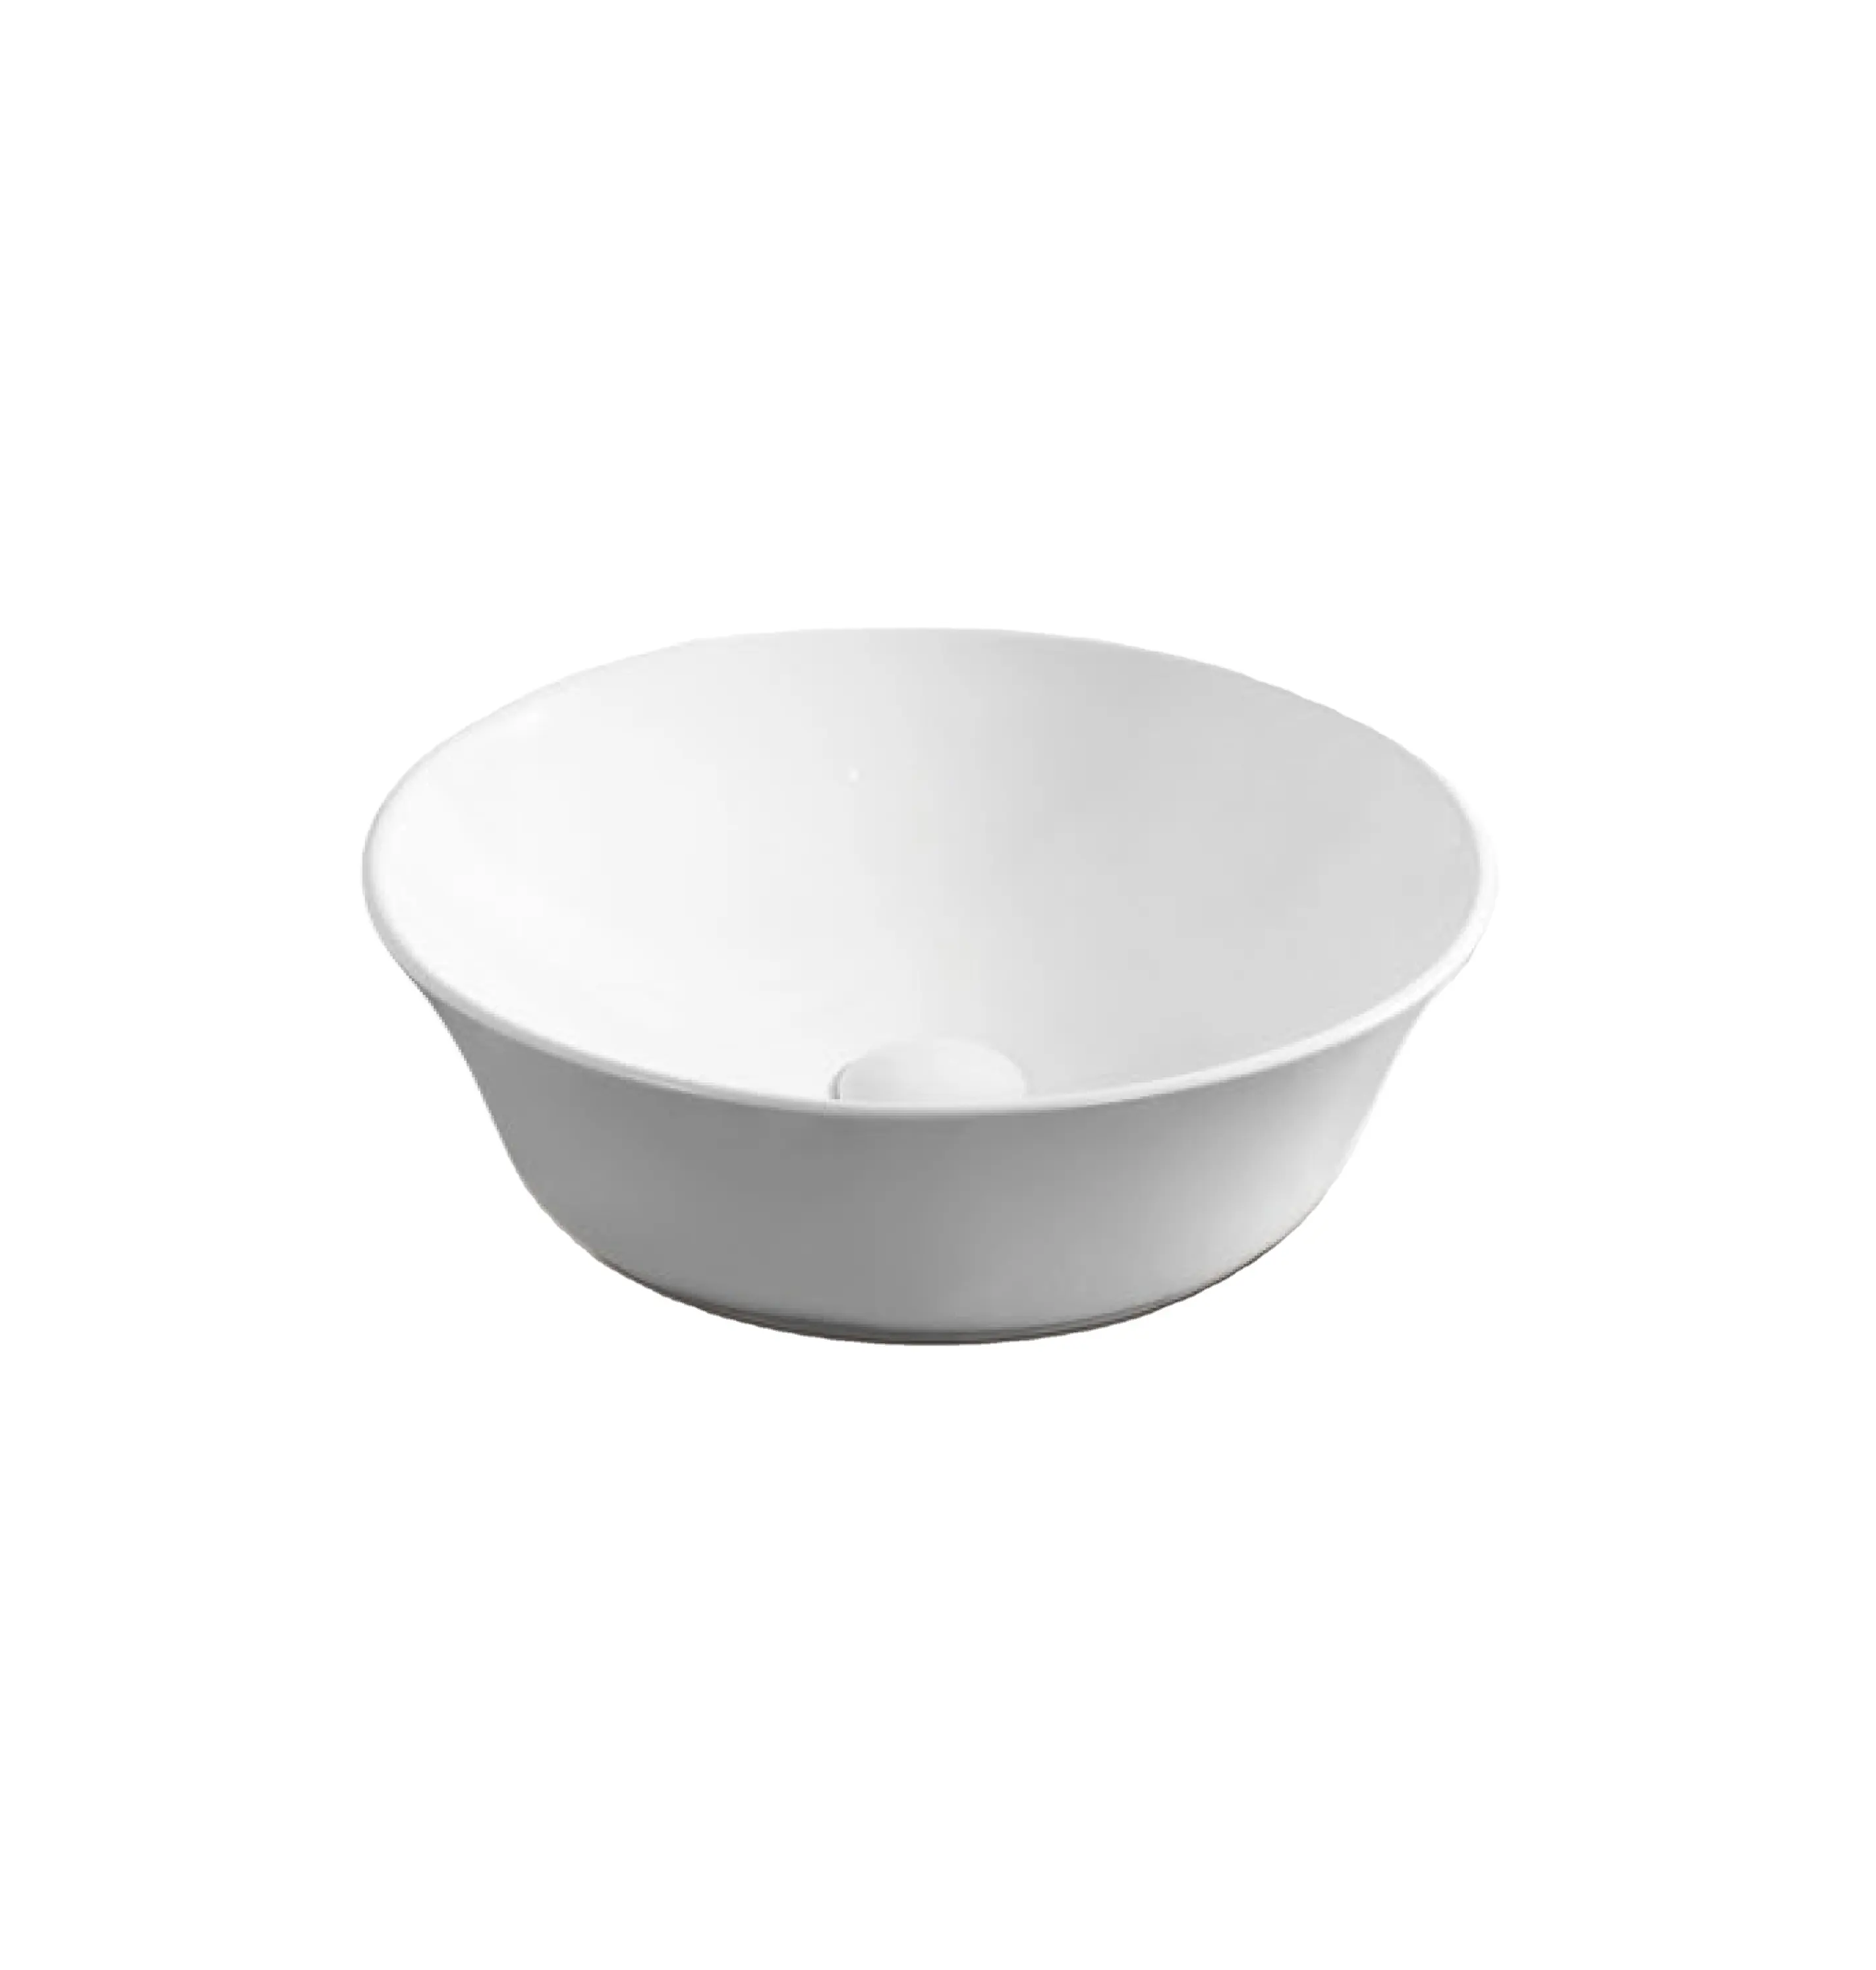 Modernes Design Badezimmer Arbeits platte waschen Hand dünne runde Kunst Keramik Behälter Becken